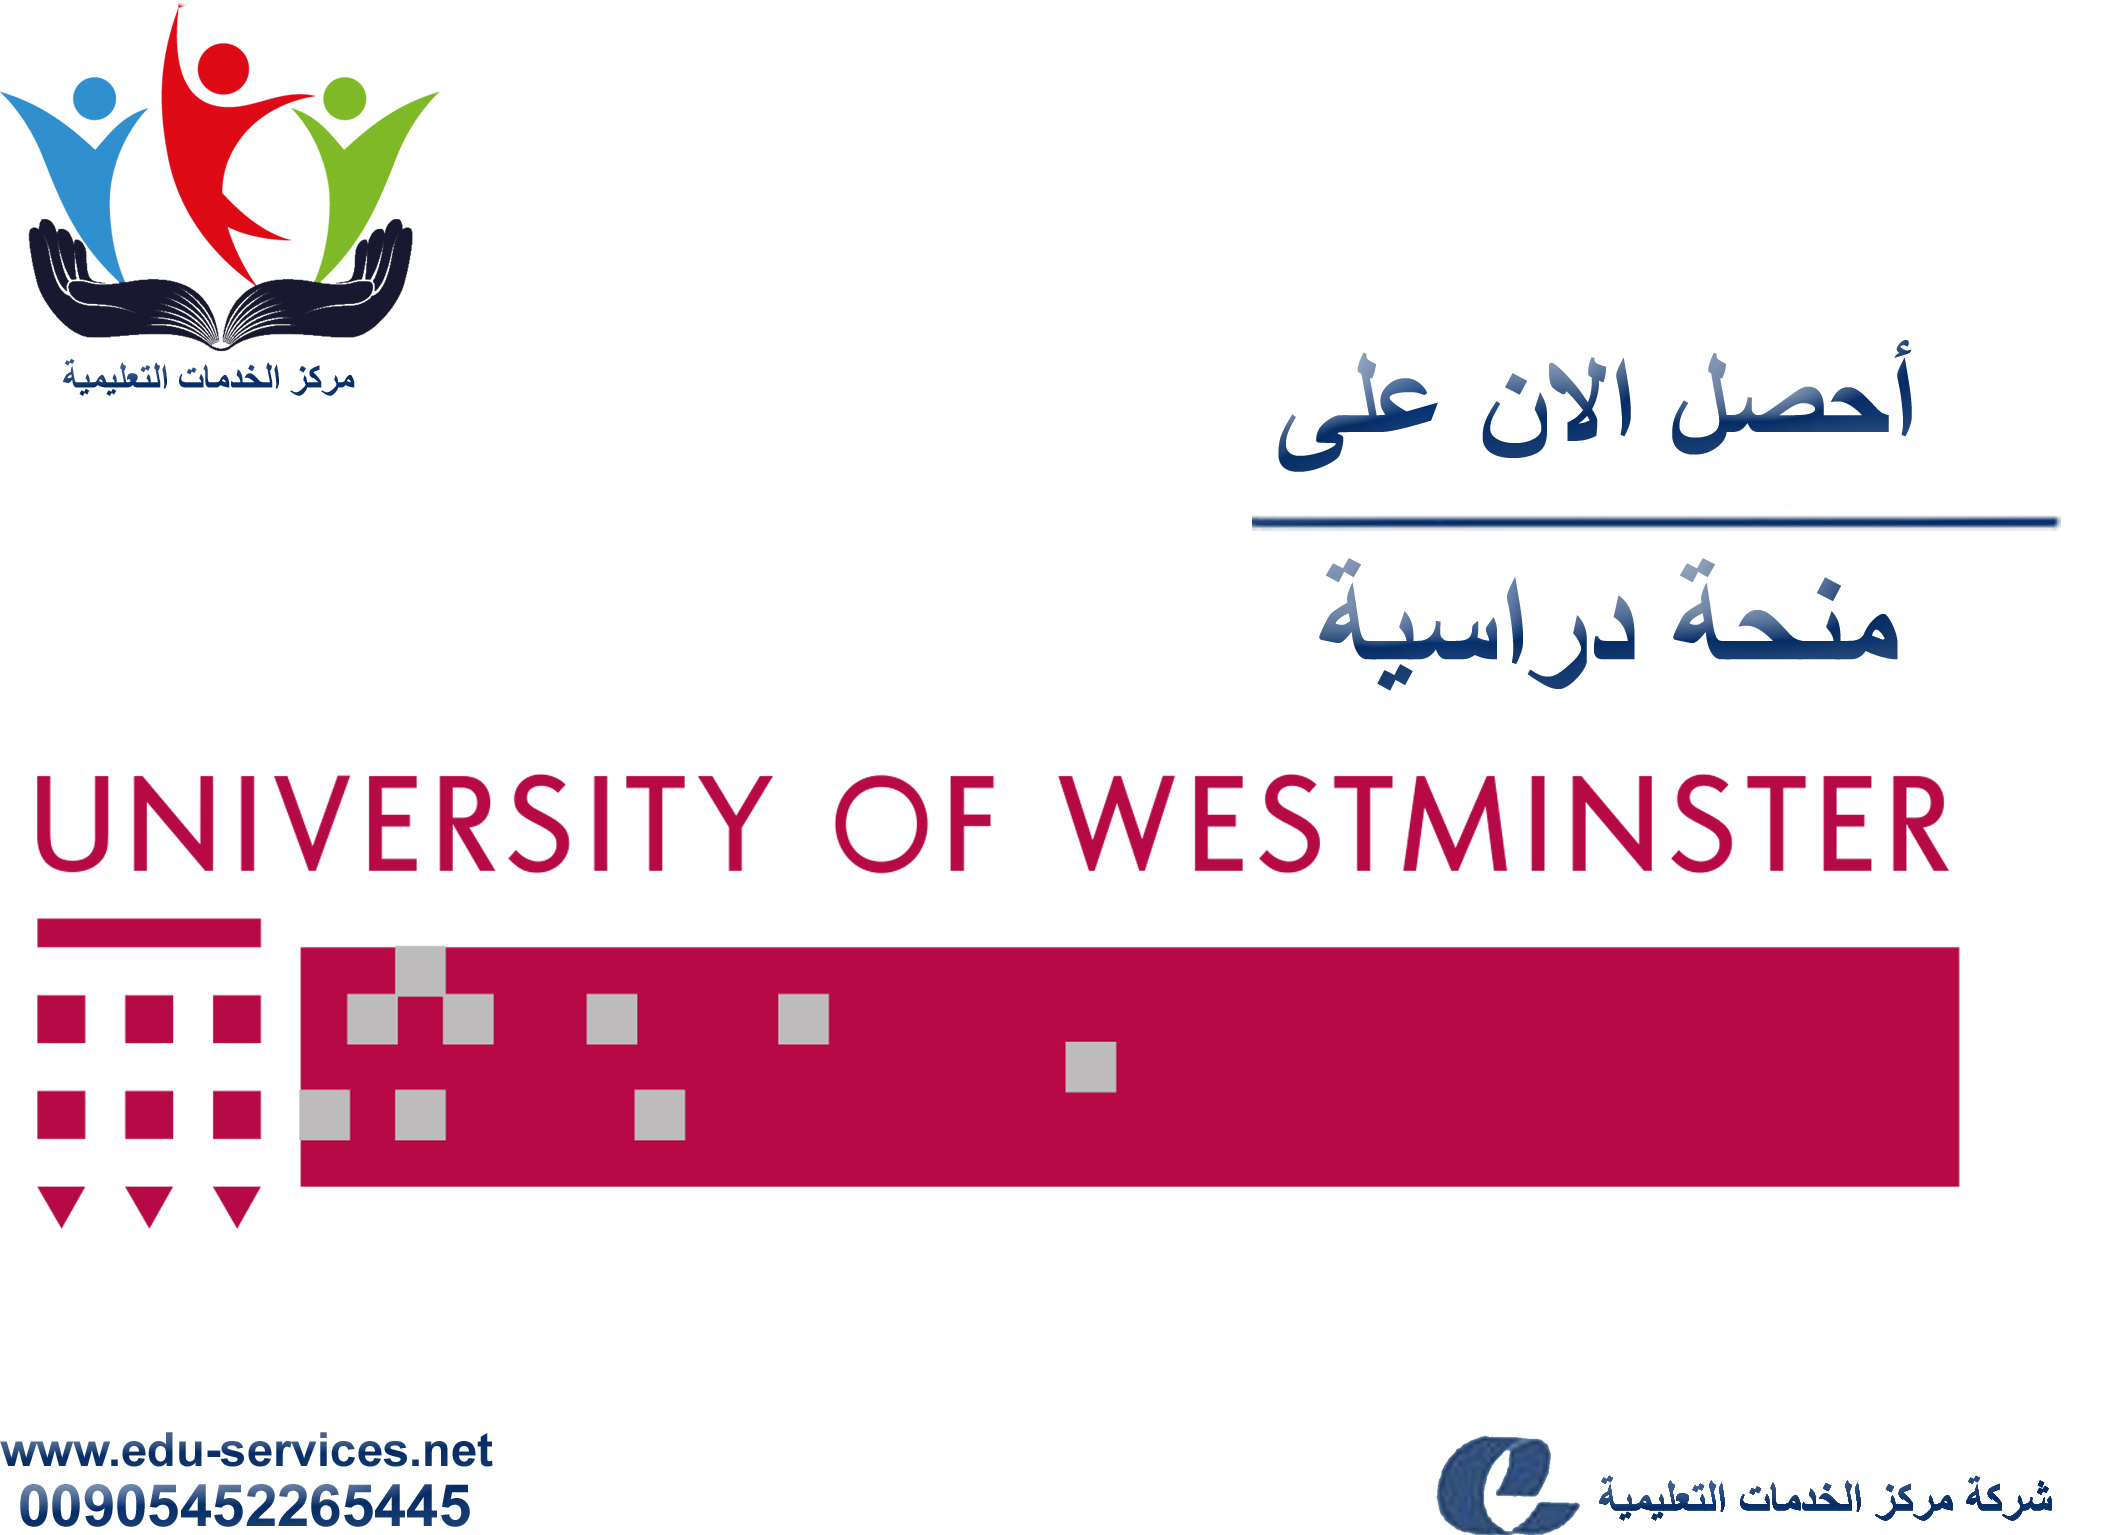 منحة جامعة وستمنستر في المملكة المتحدة لطلاب الدوليين للعام 2018